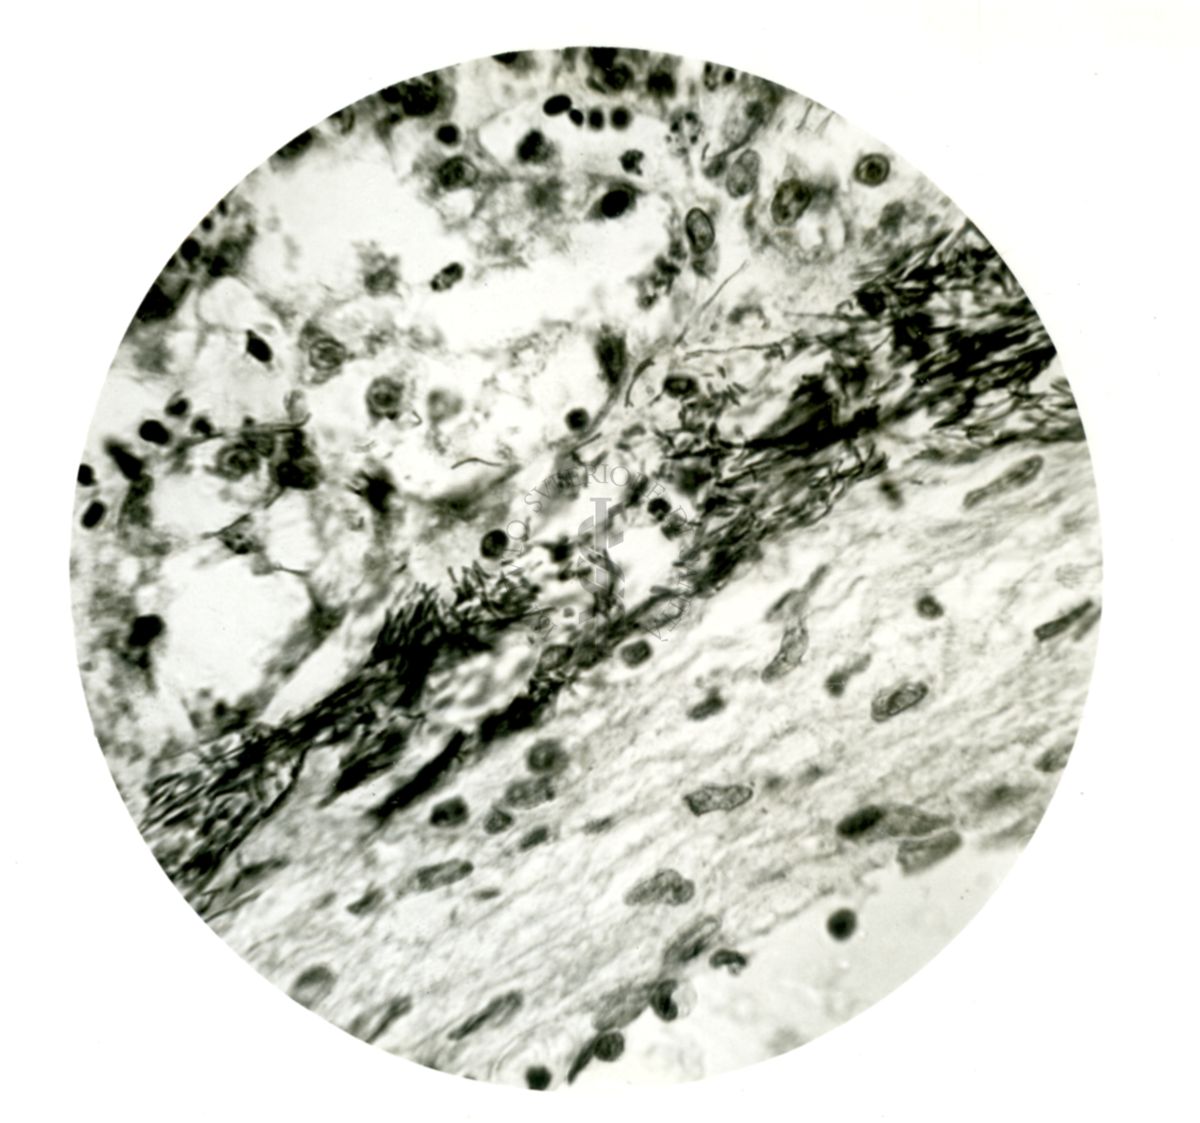 Infezione sperimentale da Proteus vulgaris: Fasci di Protei nel fegato di una carpa